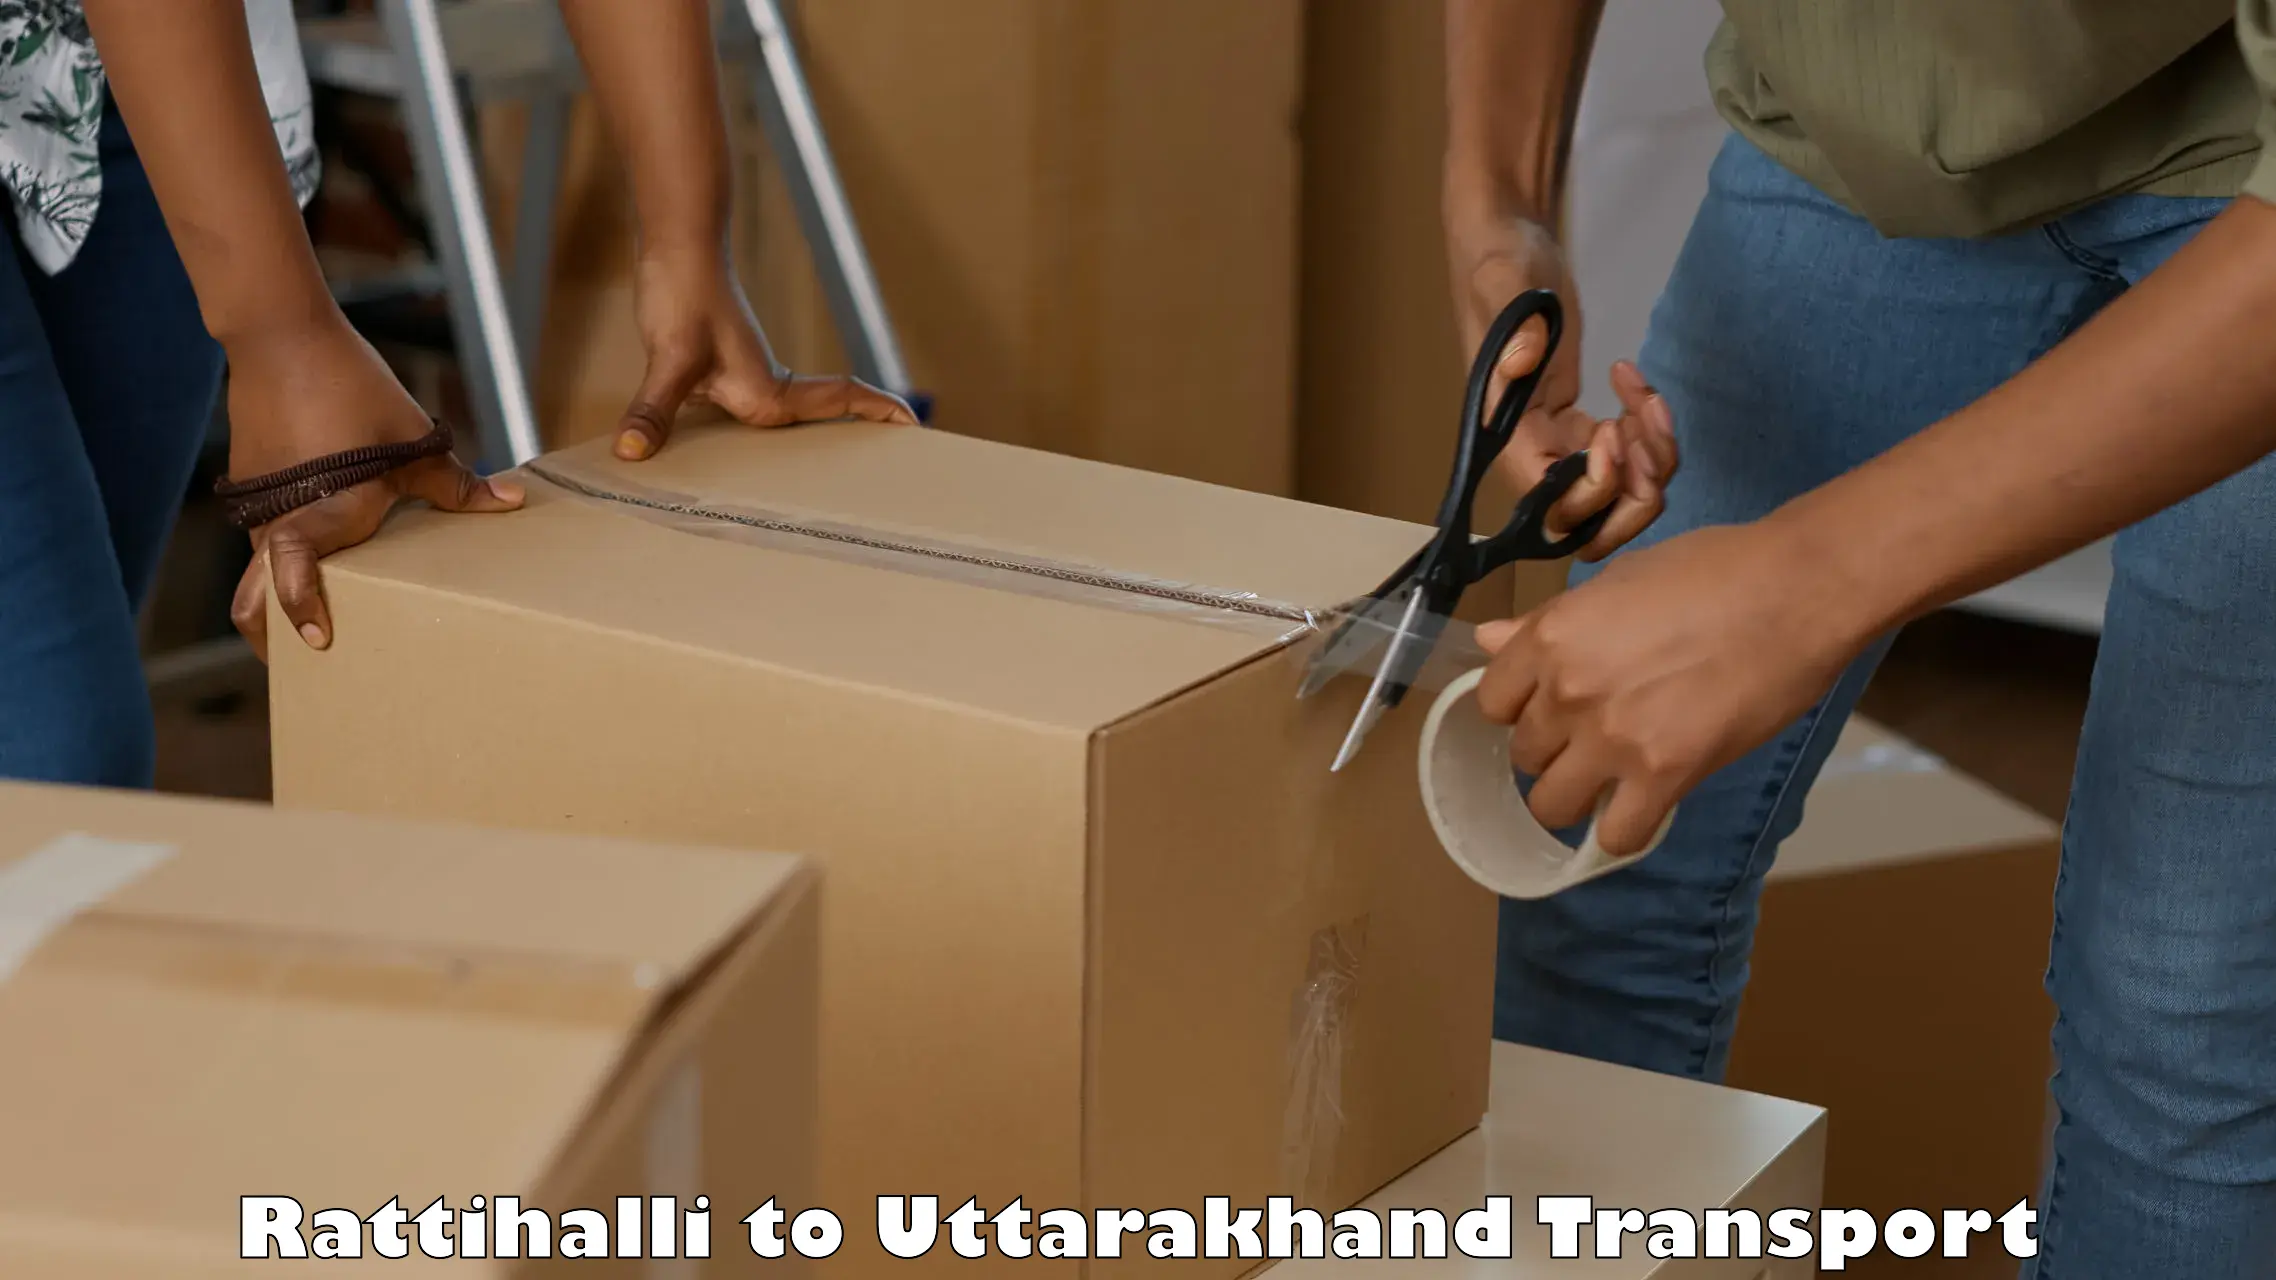 Part load transport service in India Rattihalli to Uttarakhand